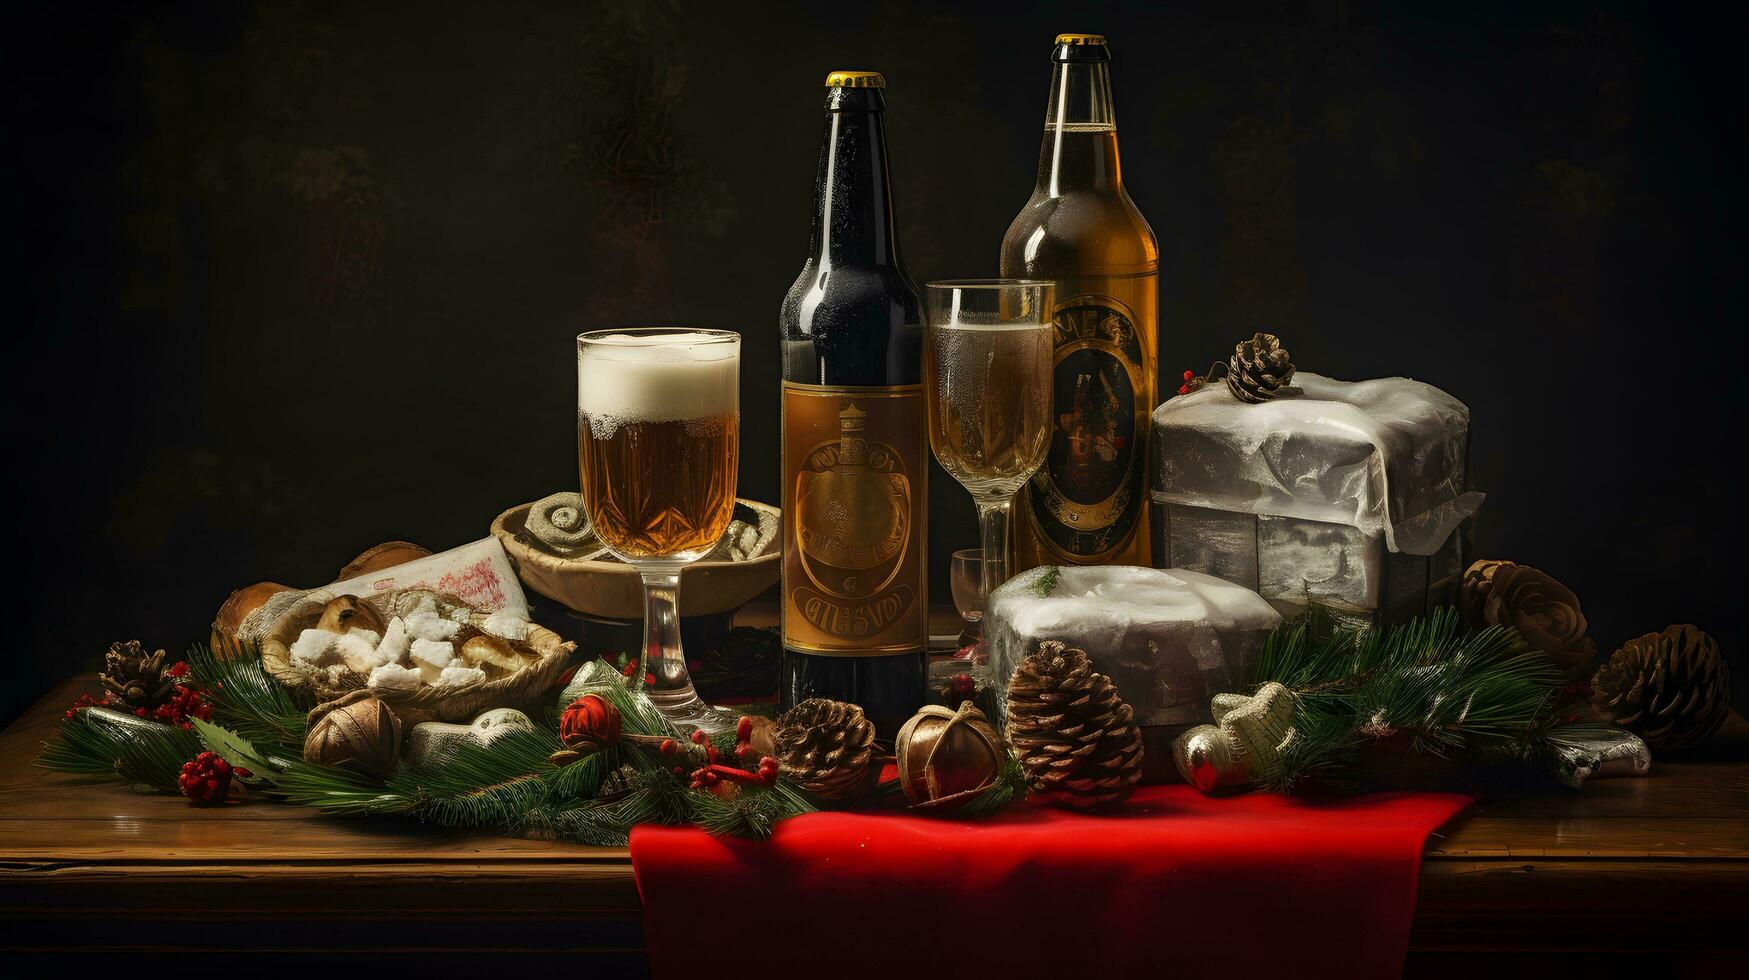 jul fortfarande liv med öl, snacks och tall koner foto